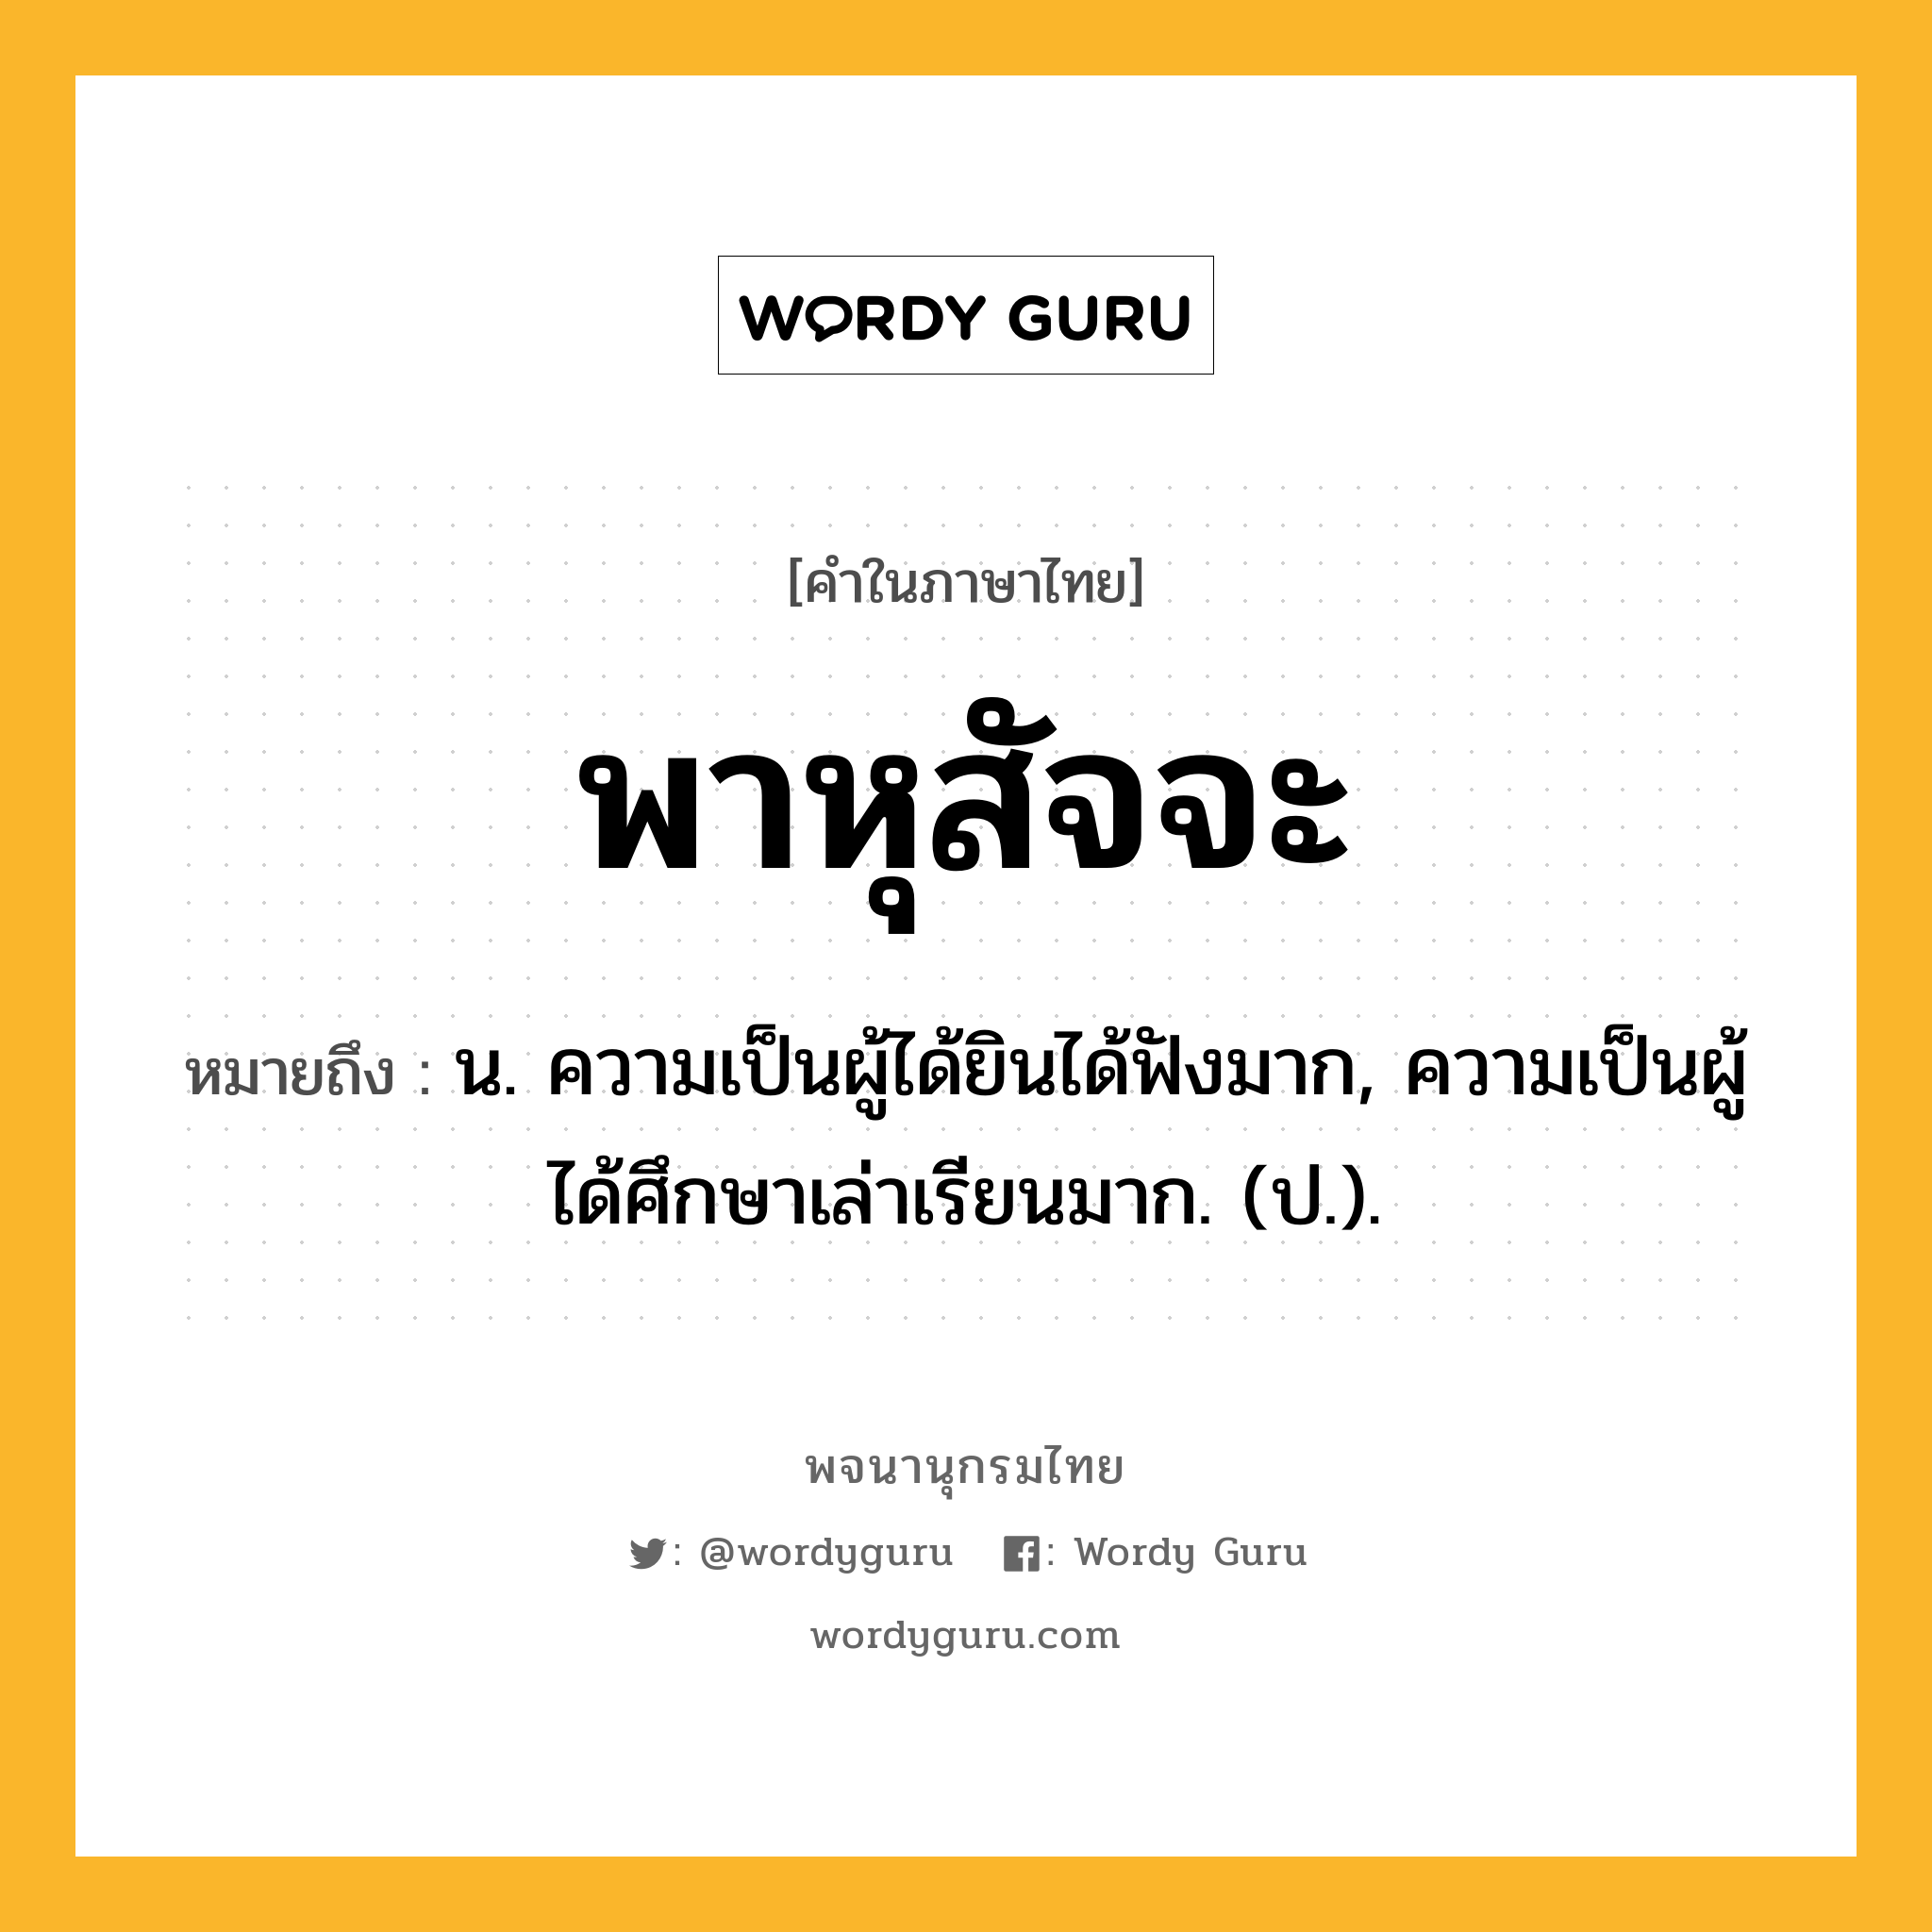 พาหุสัจจะ หมายถึงอะไร?, คำในภาษาไทย พาหุสัจจะ หมายถึง น. ความเป็นผู้ได้ยินได้ฟังมาก, ความเป็นผู้ได้ศึกษาเล่าเรียนมาก. (ป.).